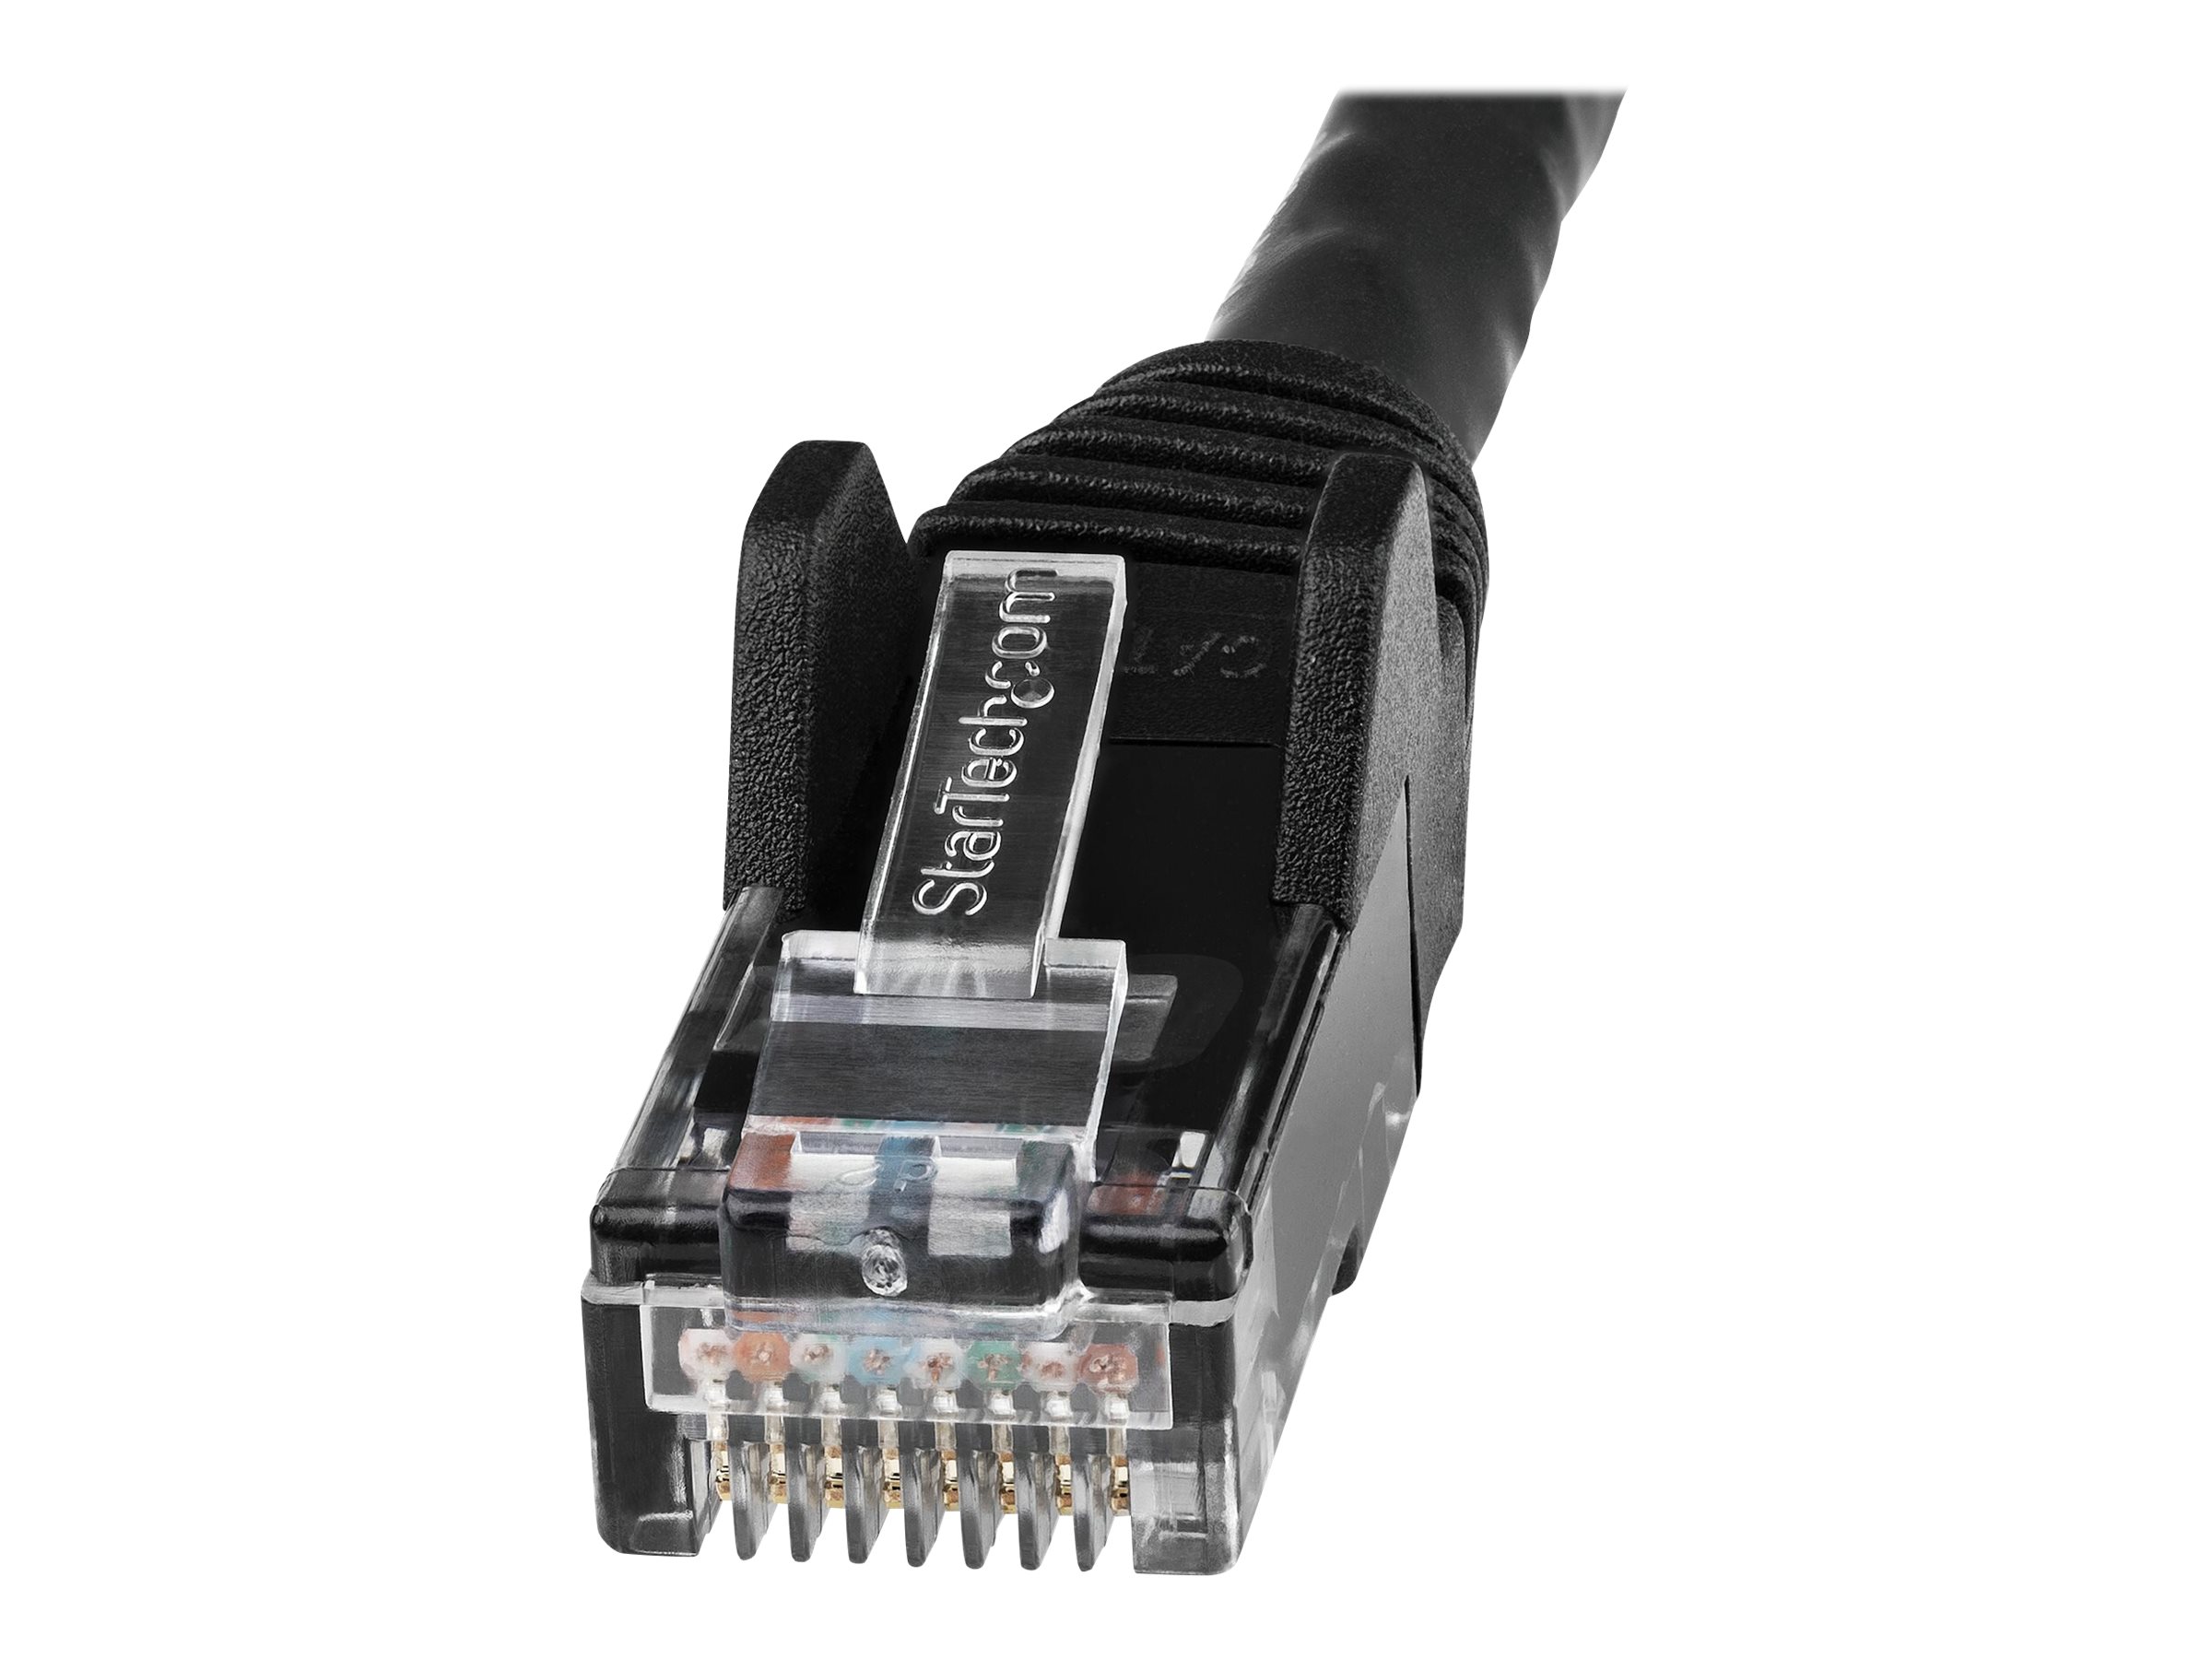 StarTech.com Câble Ethernet CAT6 7m - LSZH (Low Smoke Zero Halogen) - Cordon RJ45 UTP Anti-accrochage 10 GbE LAN - Câble Réseau Internet 650MHz 100W PoE - Noir - Snagless - 24AWG (N6LPATCH7MBK) - Cordon de raccordement - RJ-45 (M) pour RJ-45 (M) - 7 m - 6 mm - UTP - CAT 6 - sans crochet - noir - N6LPATCH7MBK - Câbles à paire torsadée